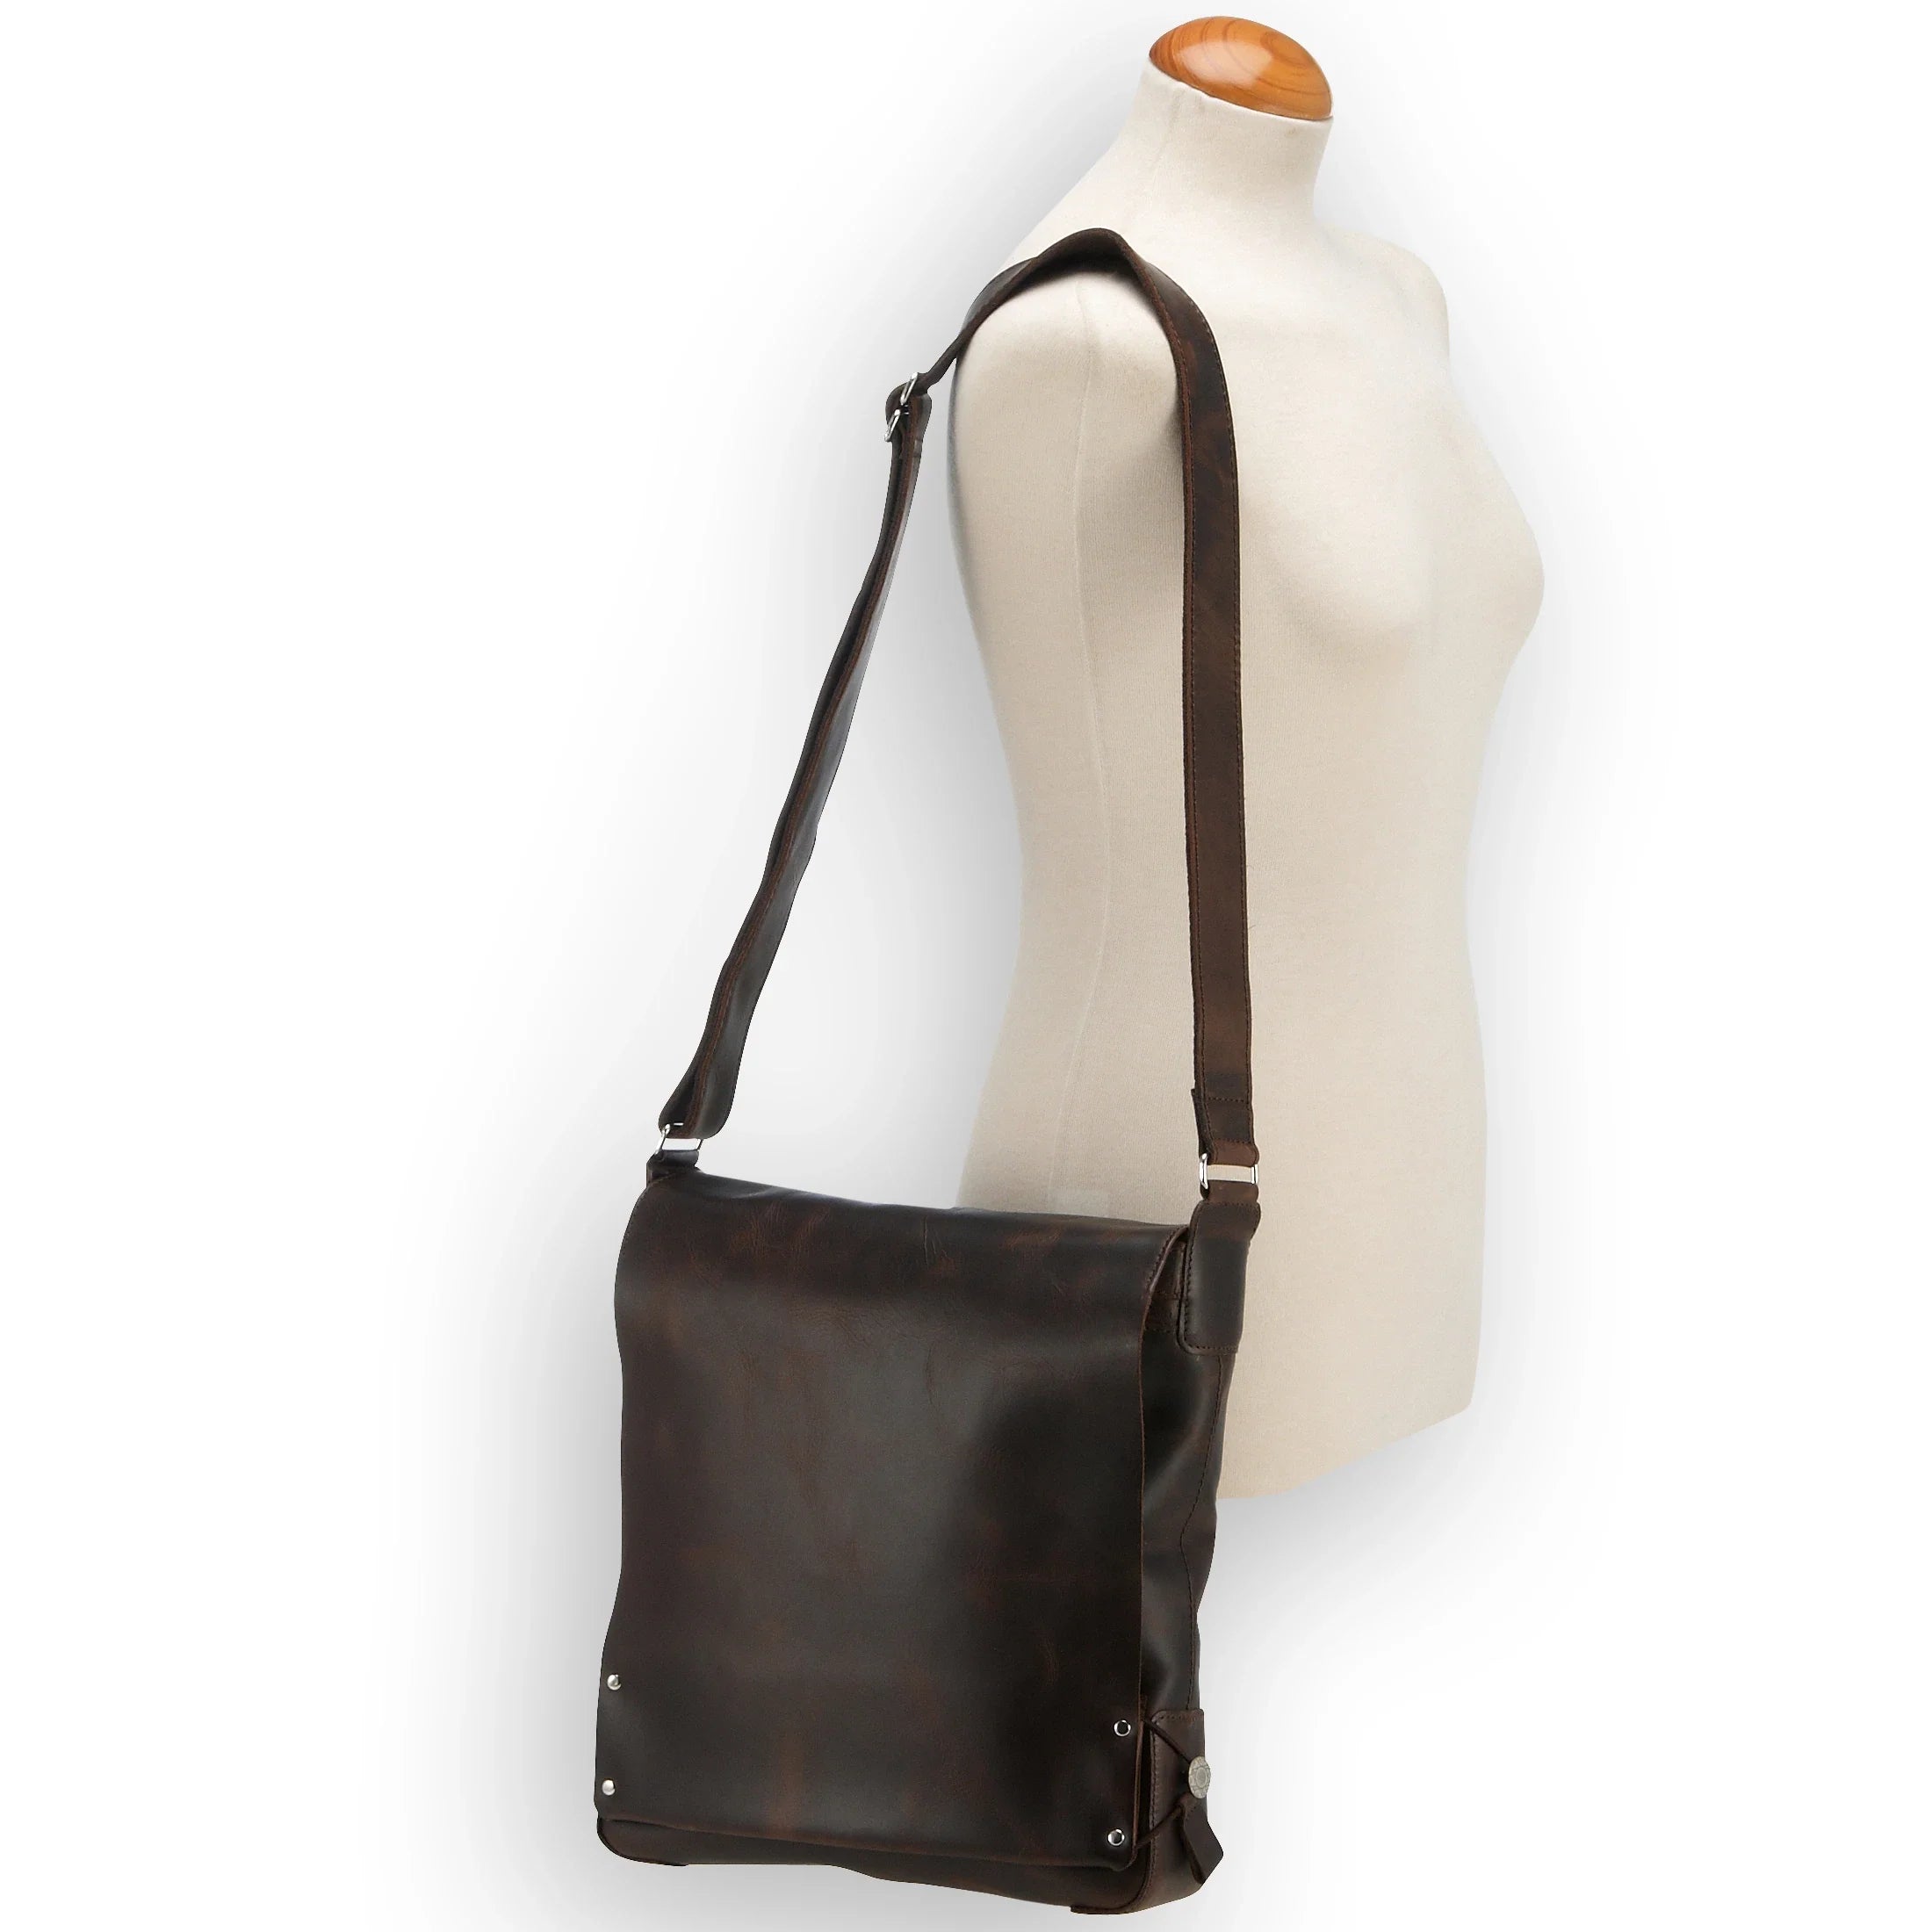 Harold's Jil leather shoulder bag 29 cm - cognac